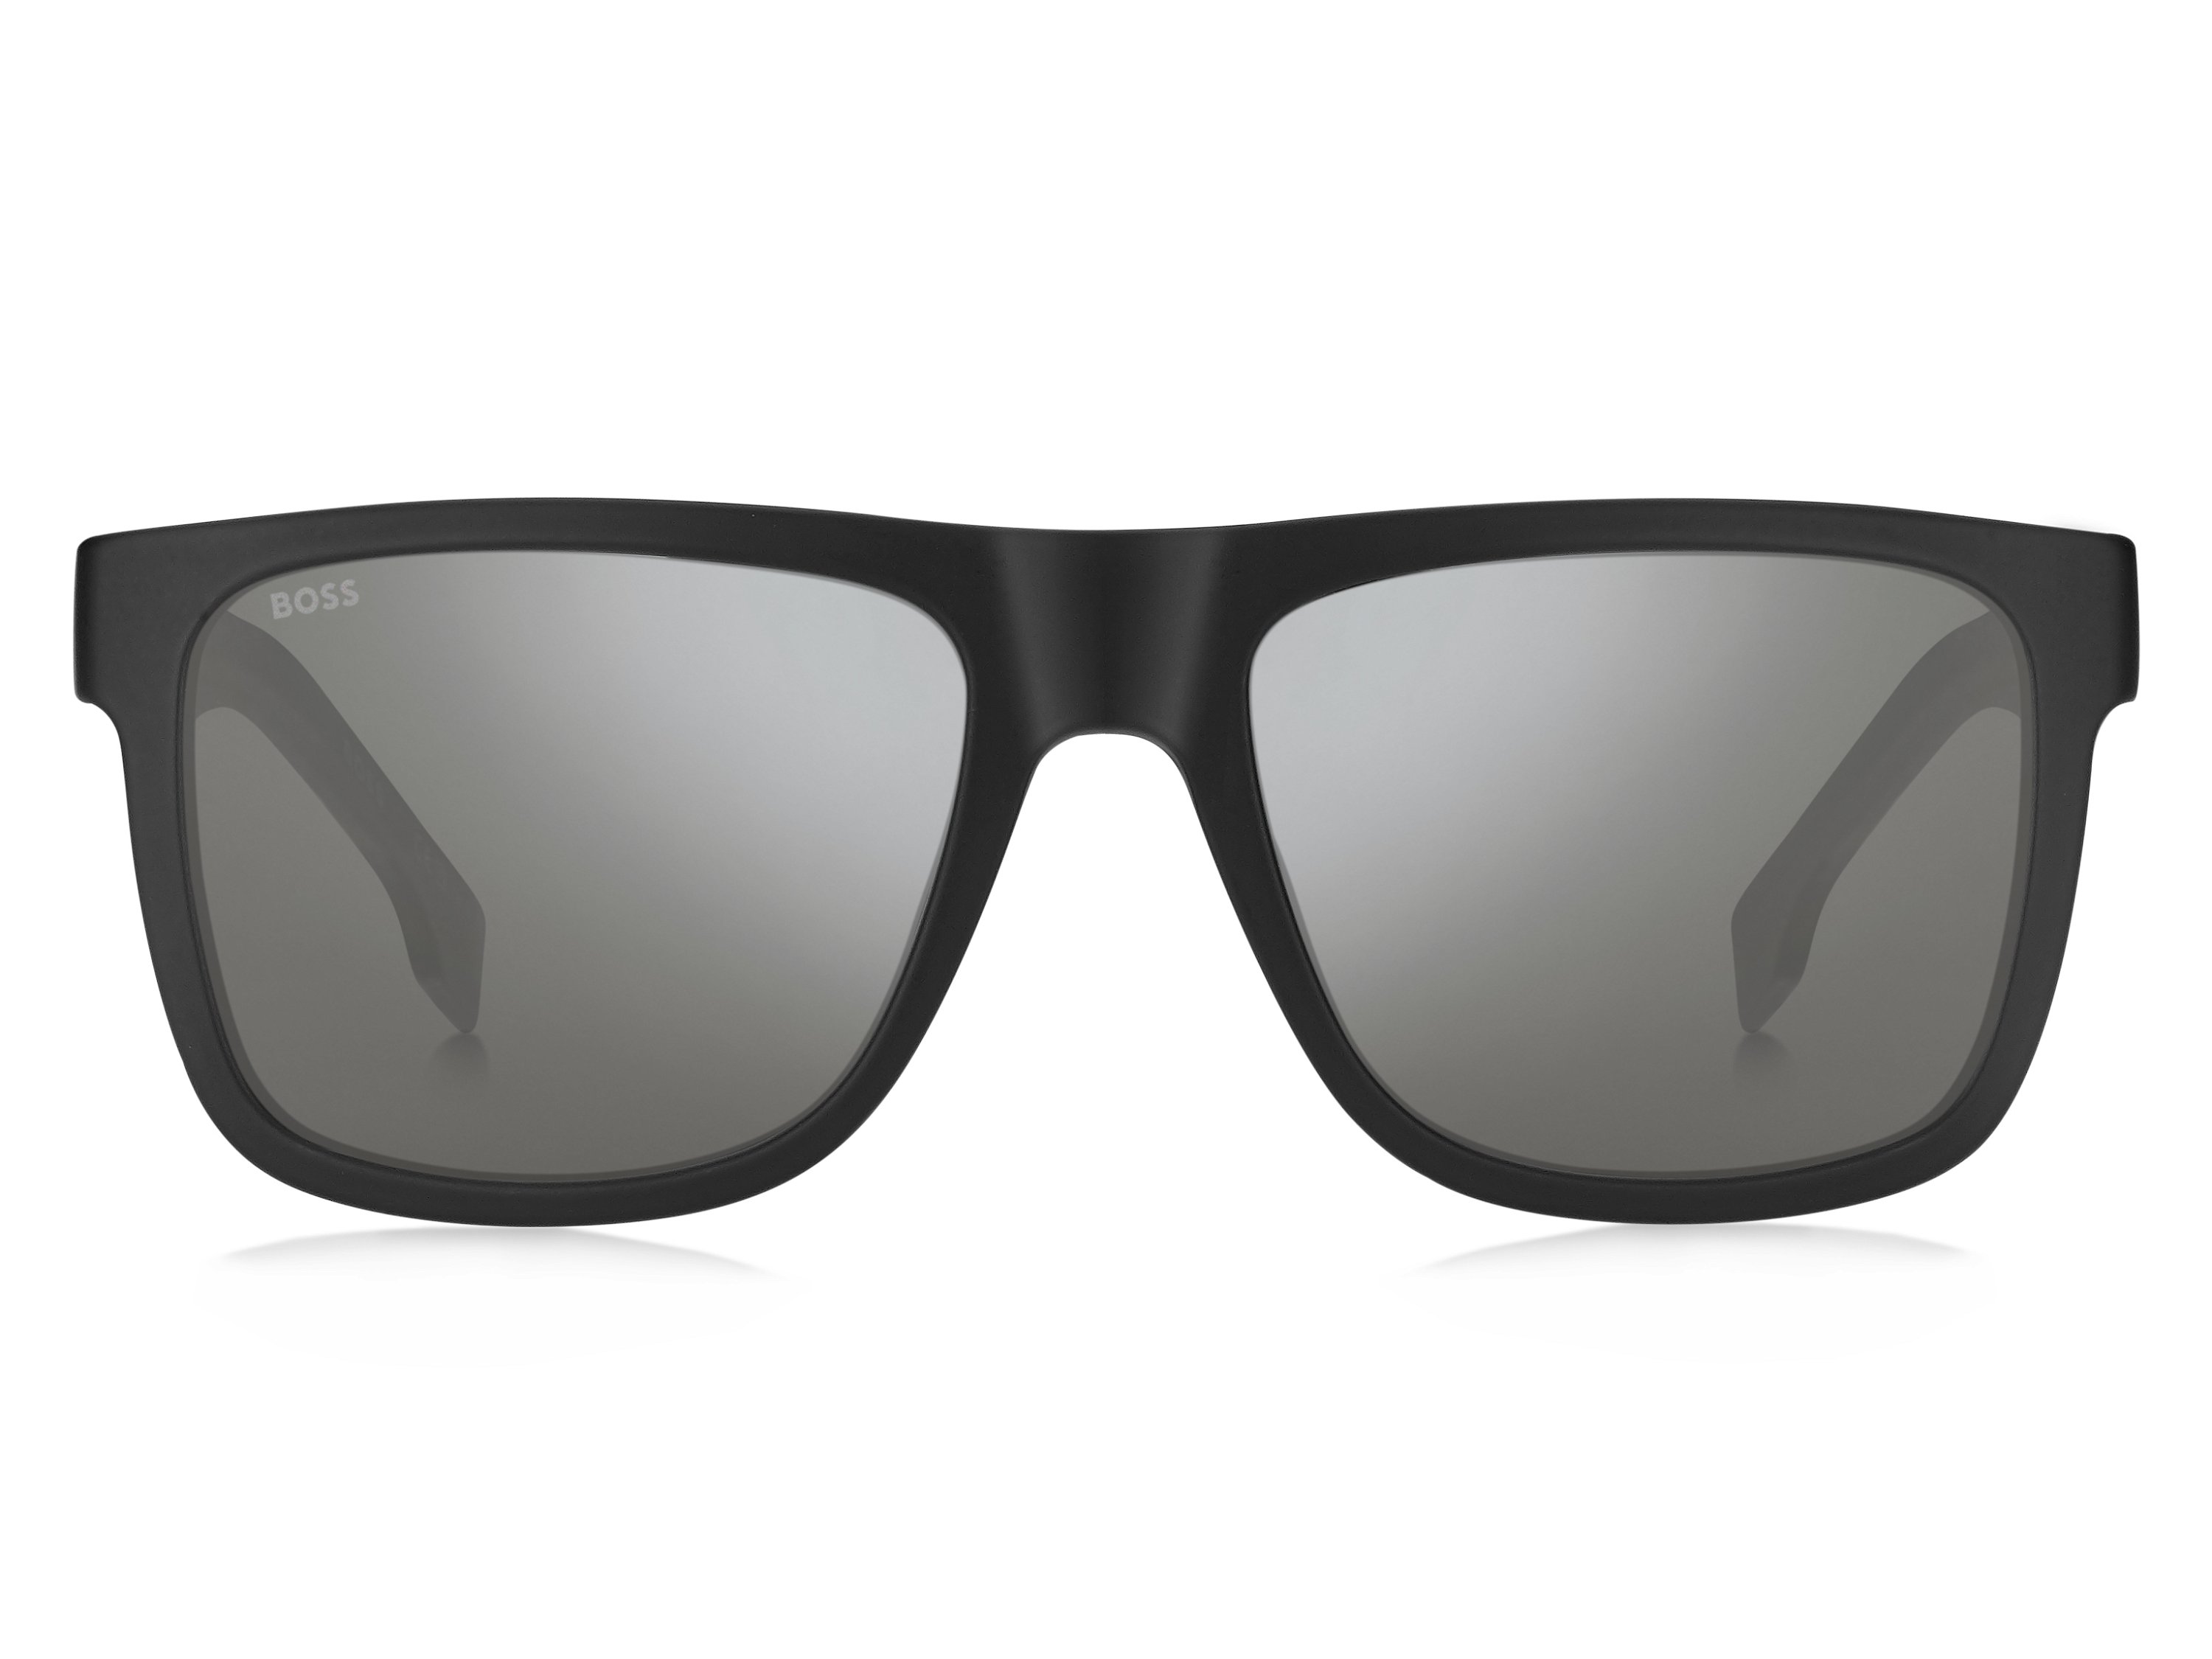 Das Bild zeigt die Sonnenbrille BOSS1647S 003 von der Marke BOSS in Schwarz.